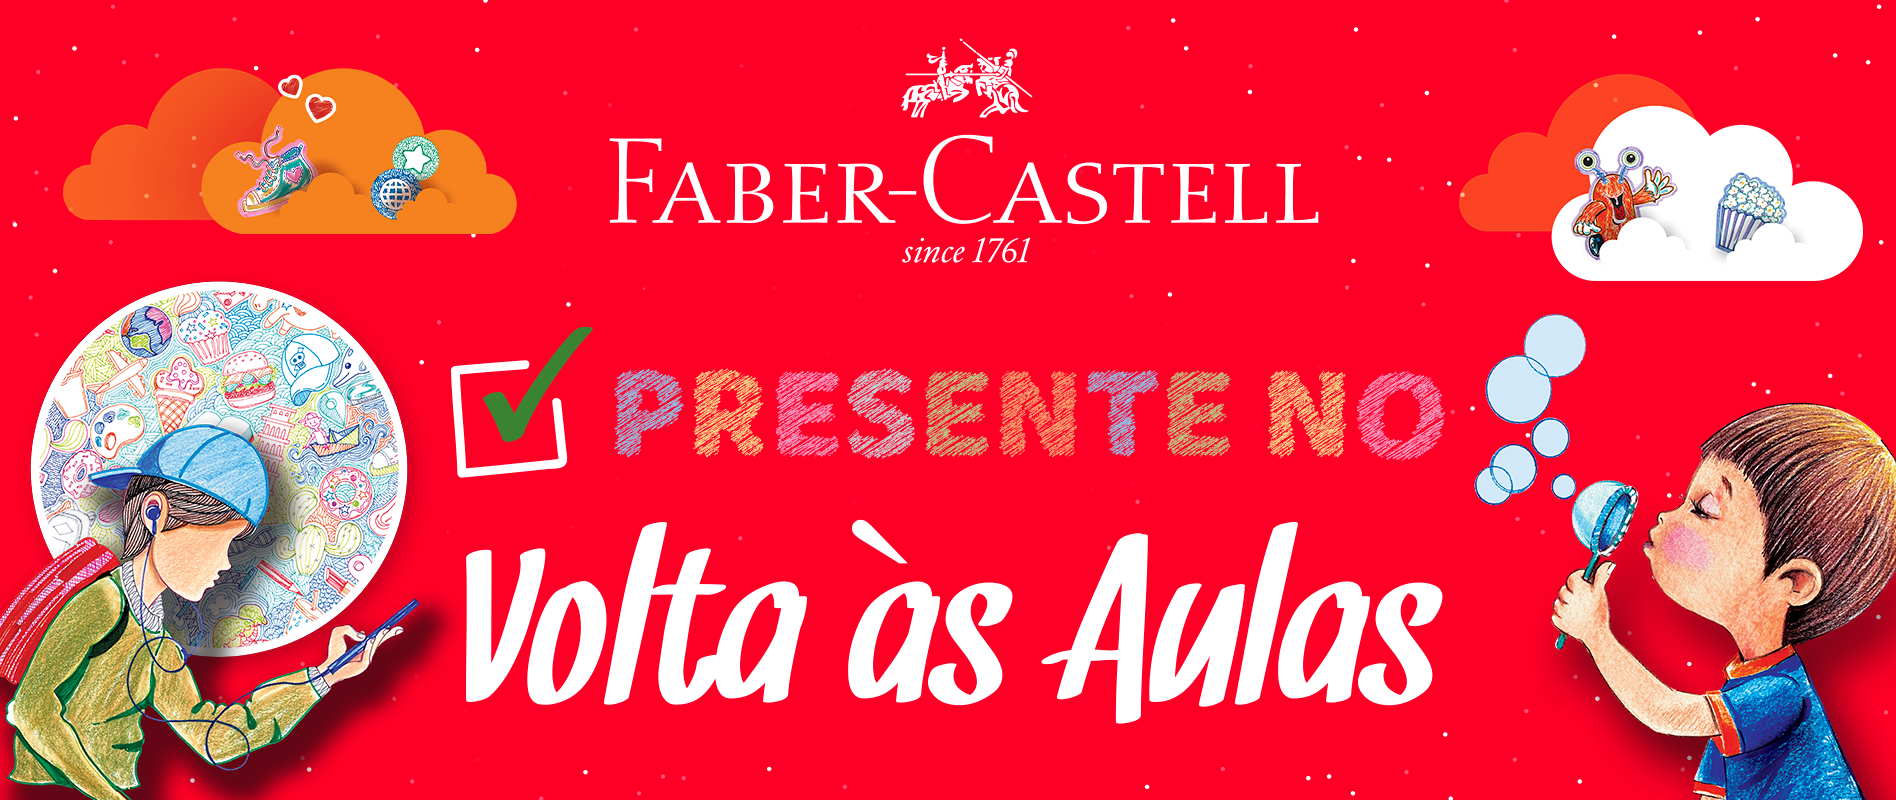 Faber-Castell Presente na Volta às Aulas